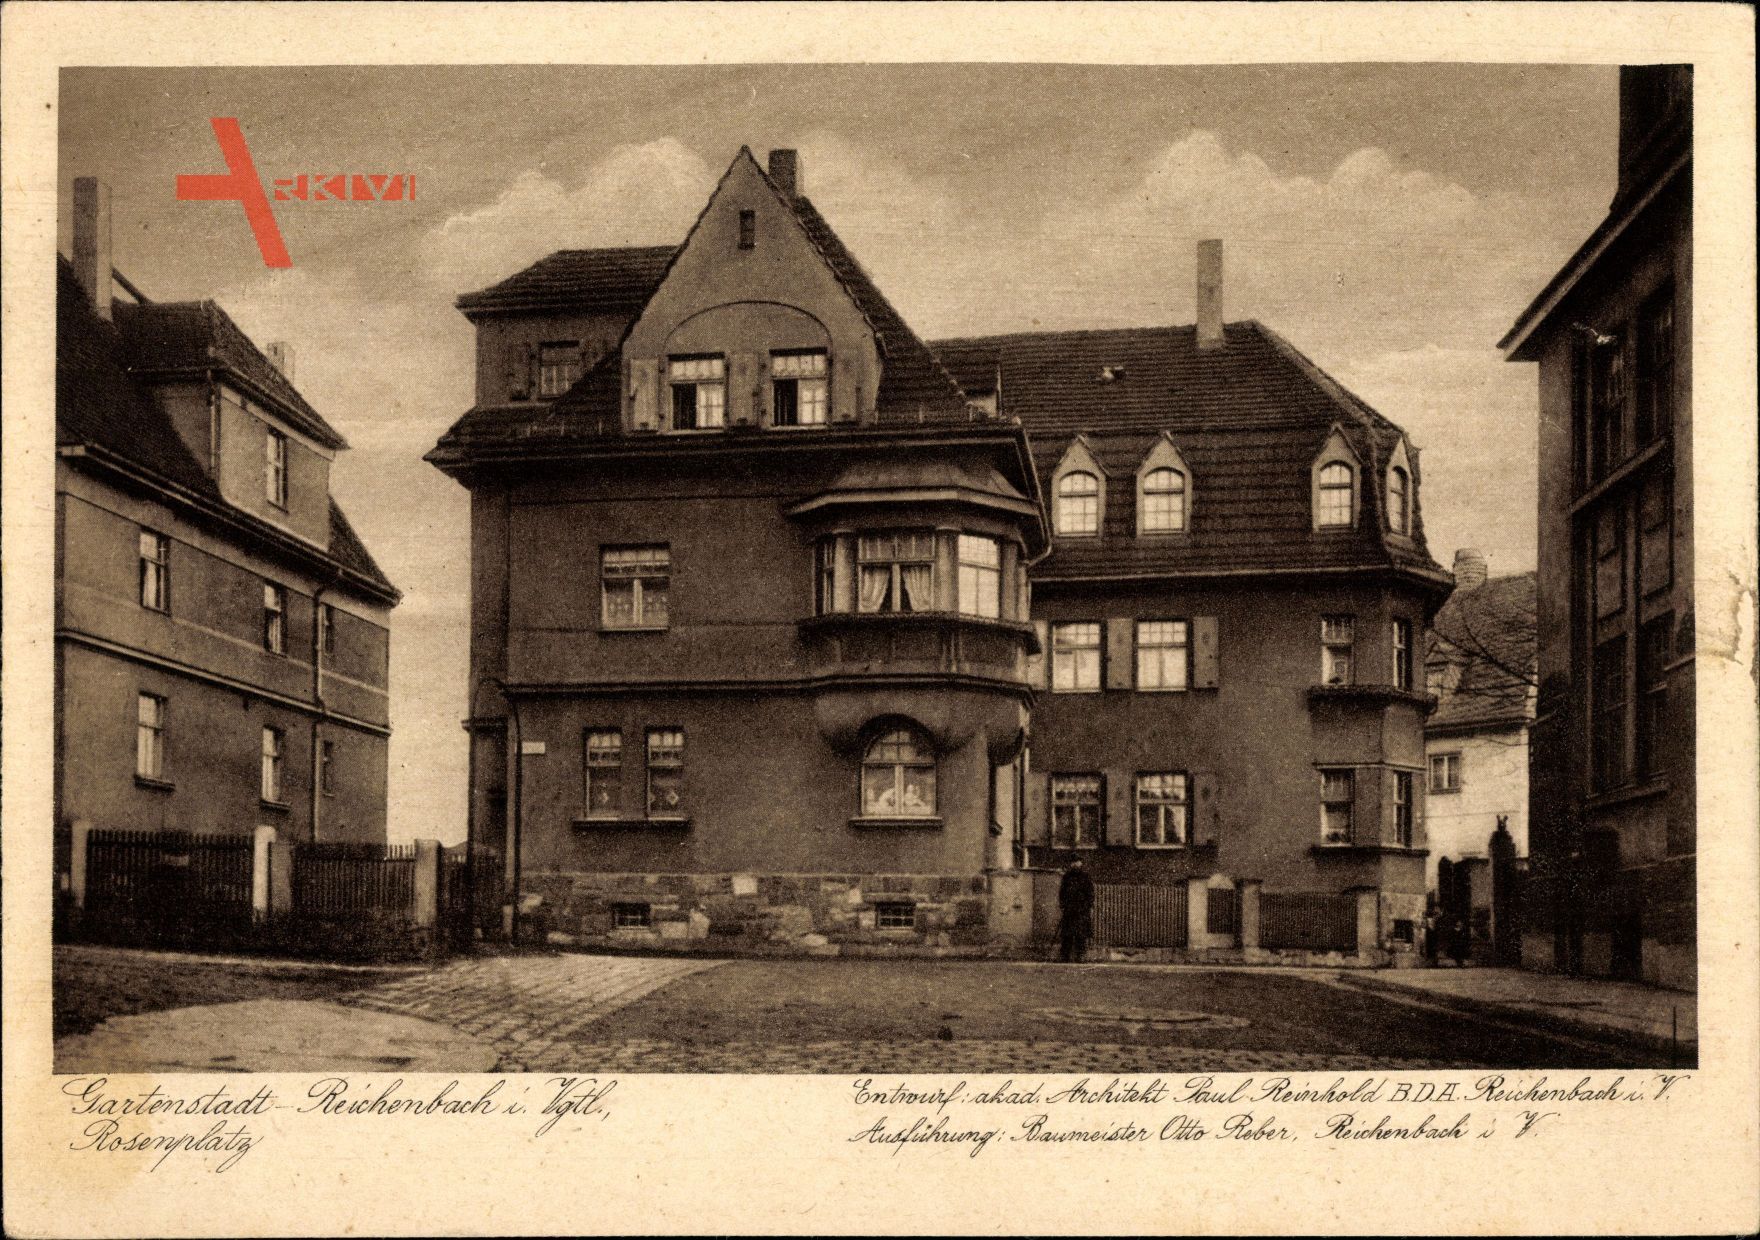 Reichenbach Vogtland, Blick auf den Rosenplatz, O. Reber, P. Reinhold